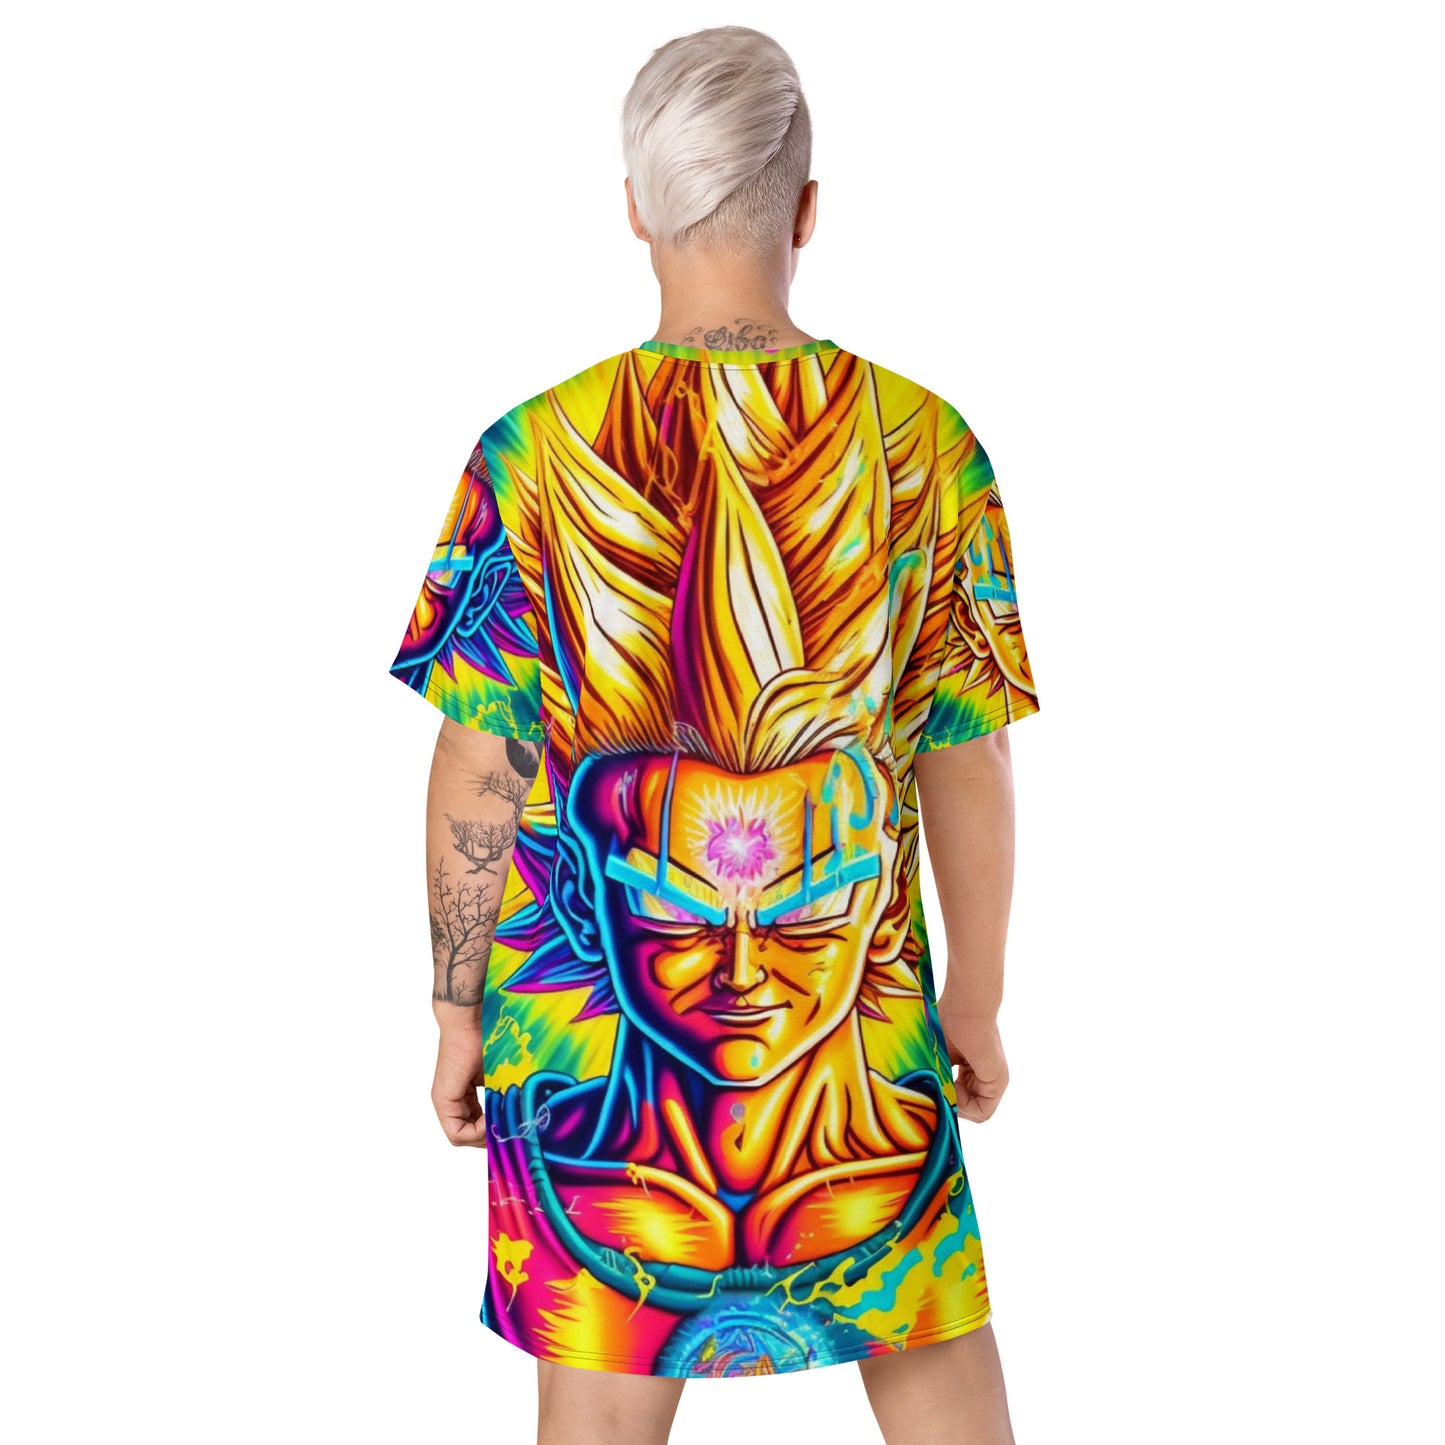 Super Saiyan Trip 1.0 T-shirt dress